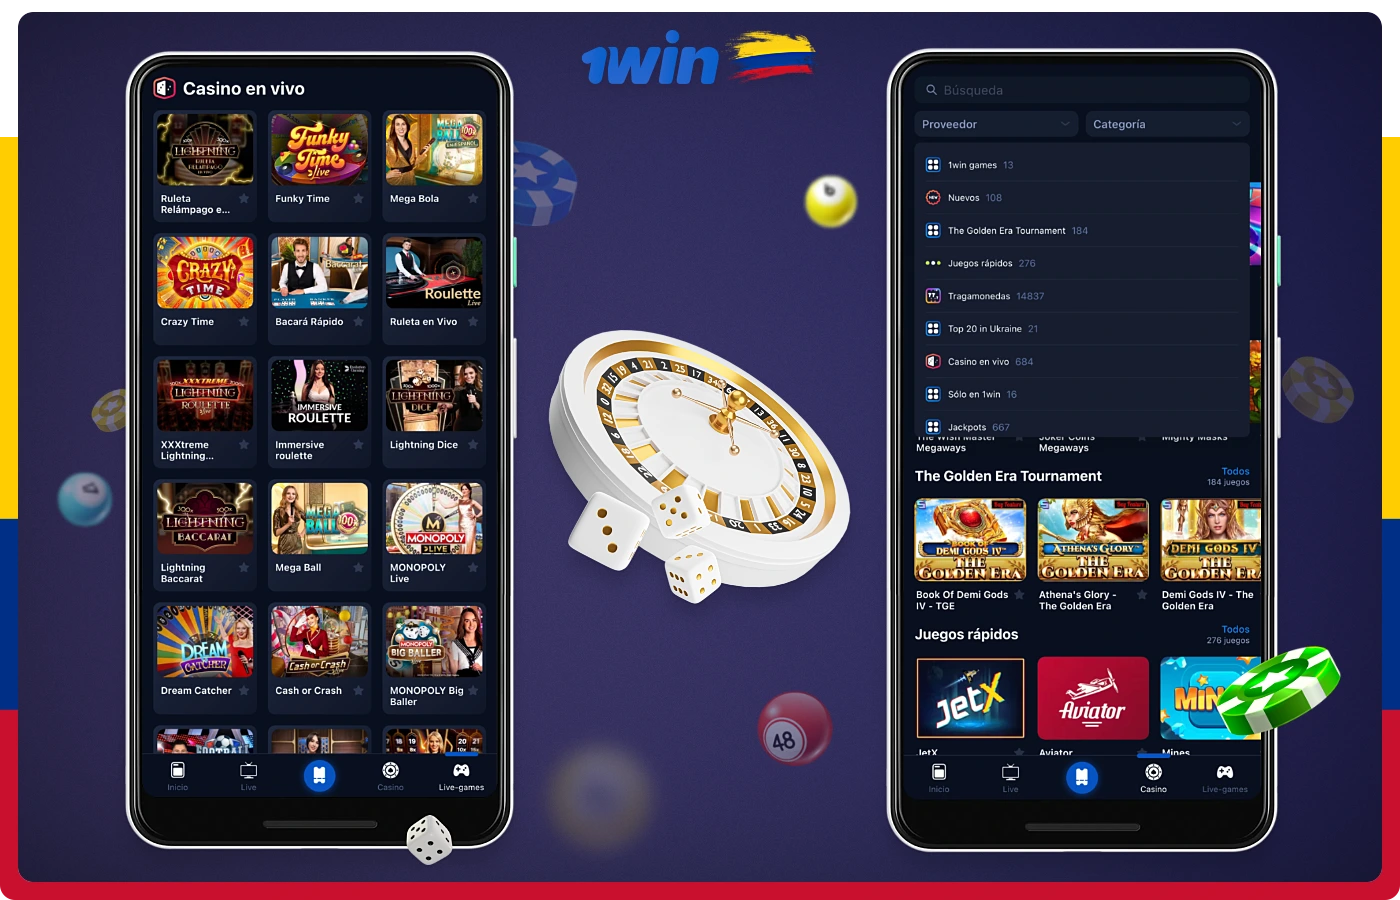 La sección de casino en línea de la aplicación 1win contiene miles de emocionantes juegos